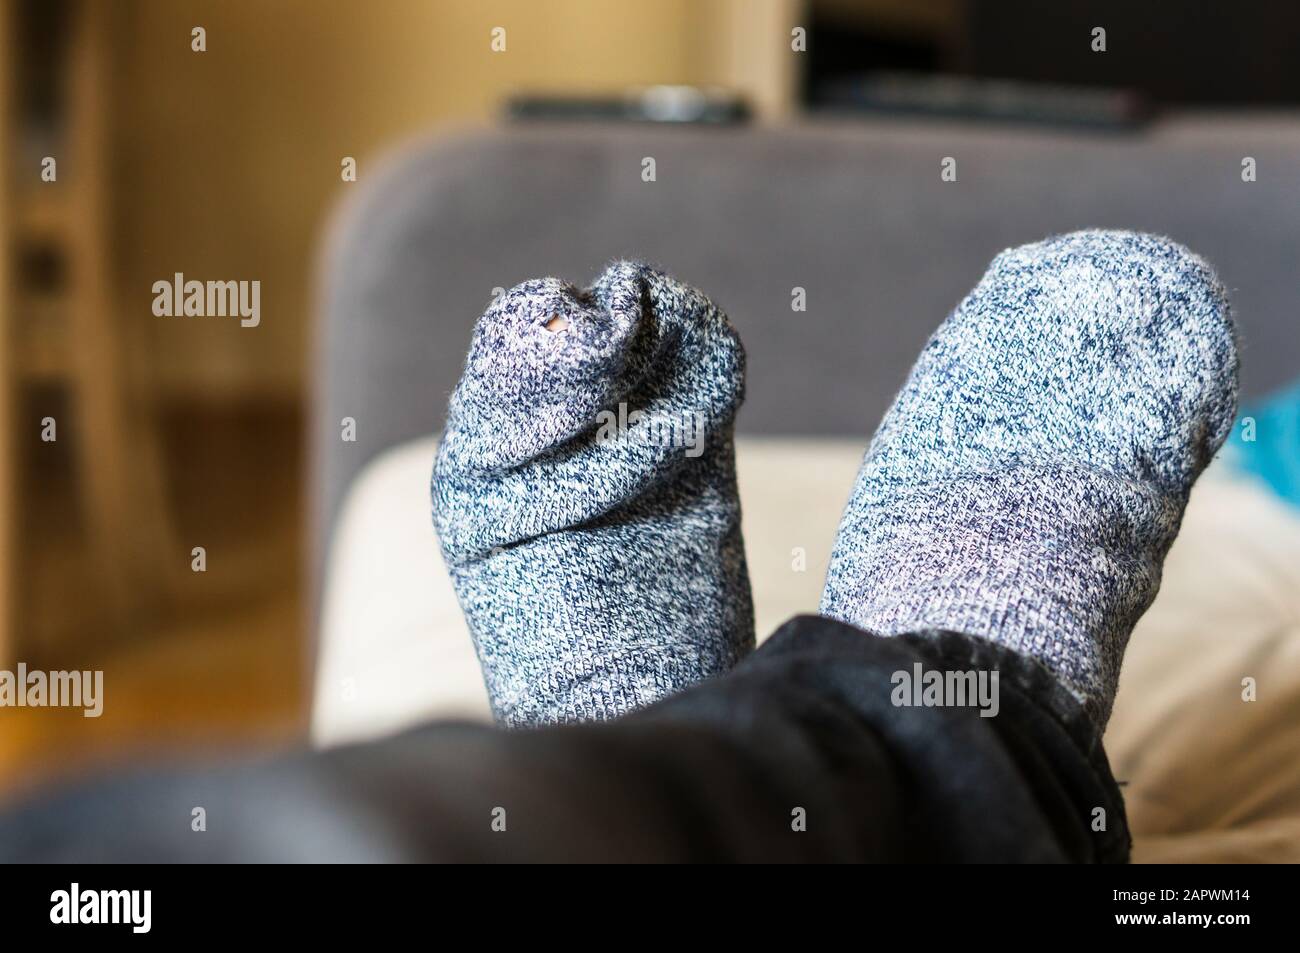 Selektive Fokusaufnahme einer Person, die graue Socken trägt Stockfoto